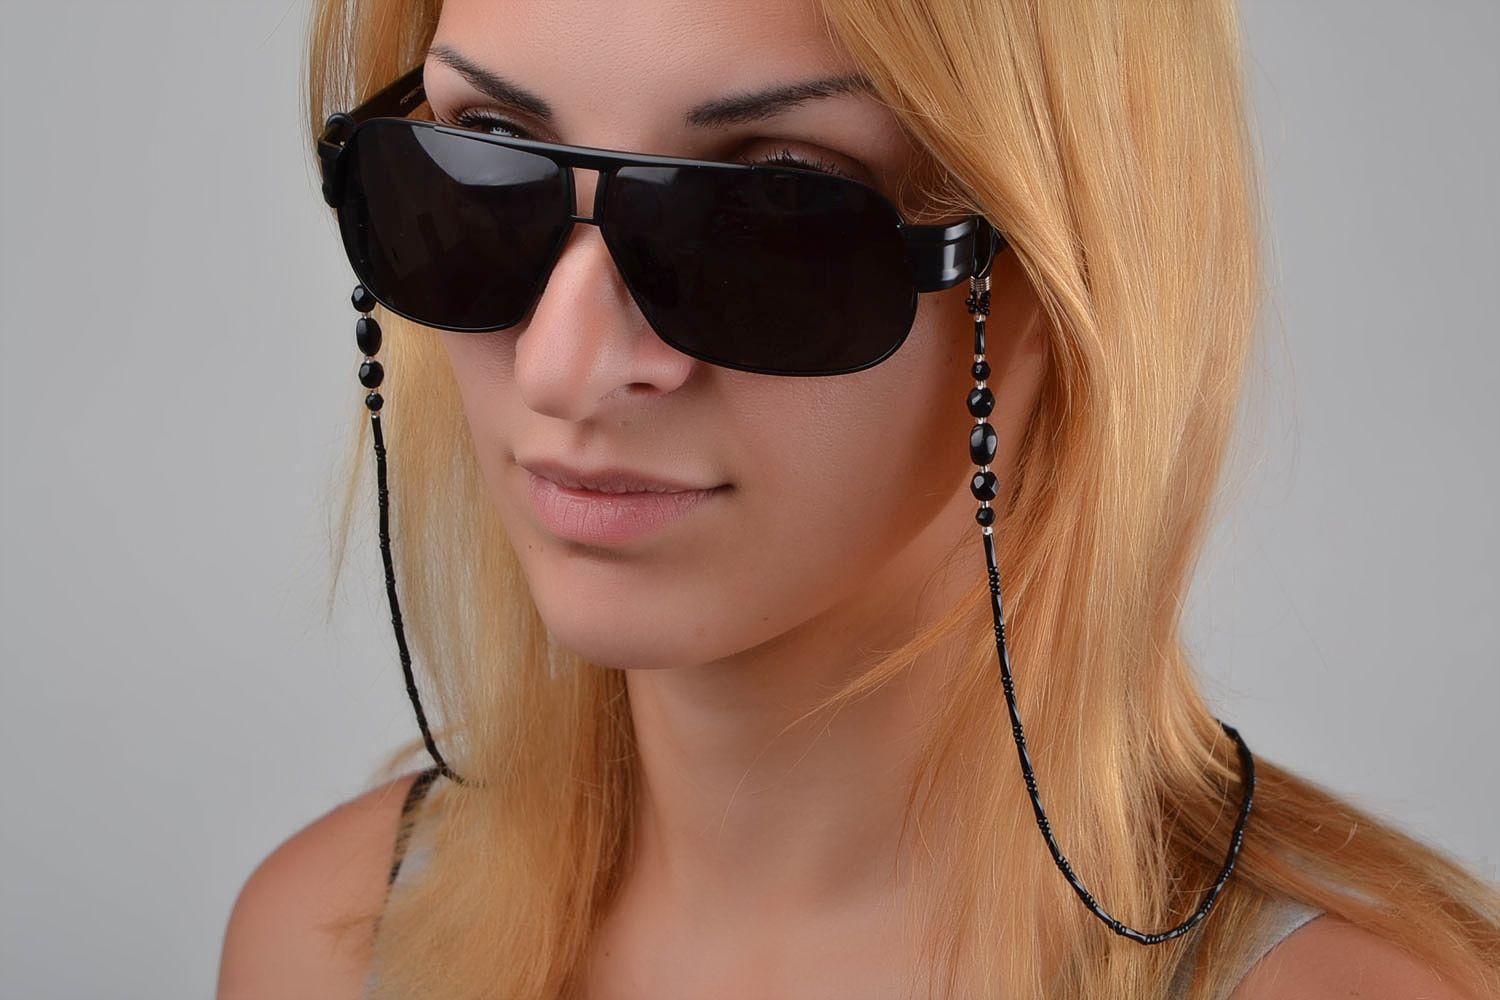 Catenella occhiali fatta a mano cordino perle per occhiali accessori occhiali foto 2